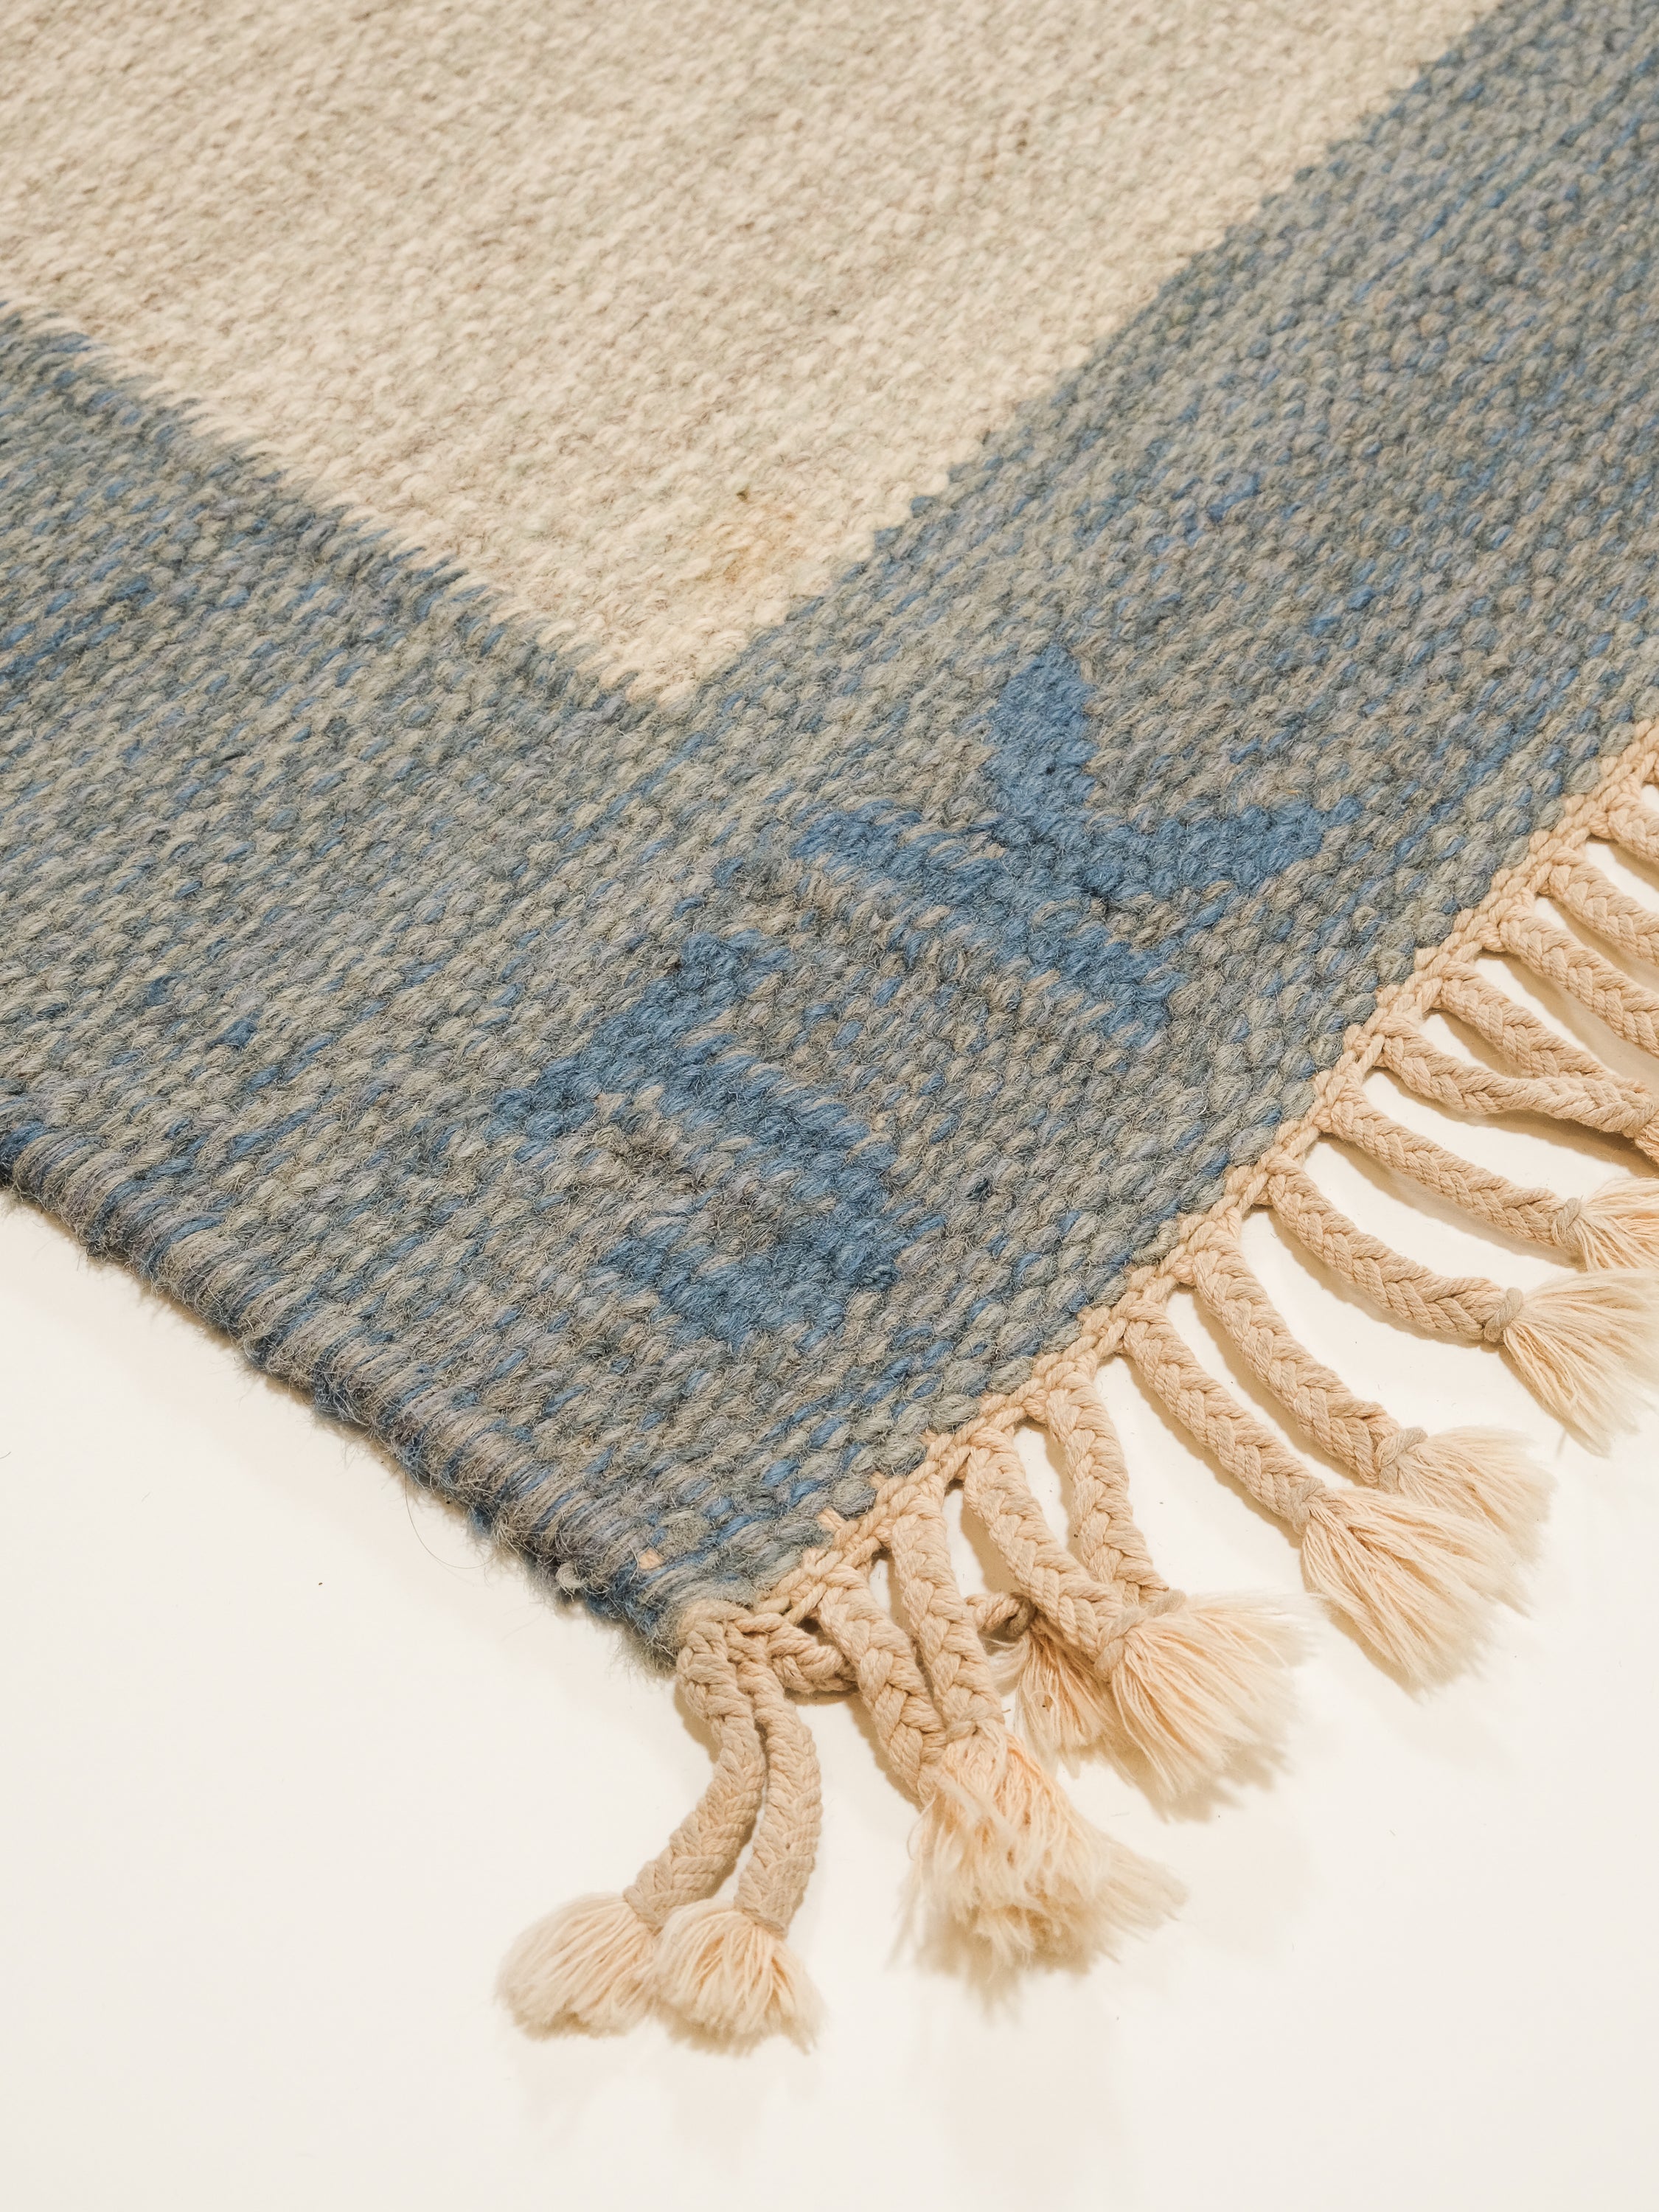 Vintage Swedish Flatweave Wool Rug by Karin Jönsson